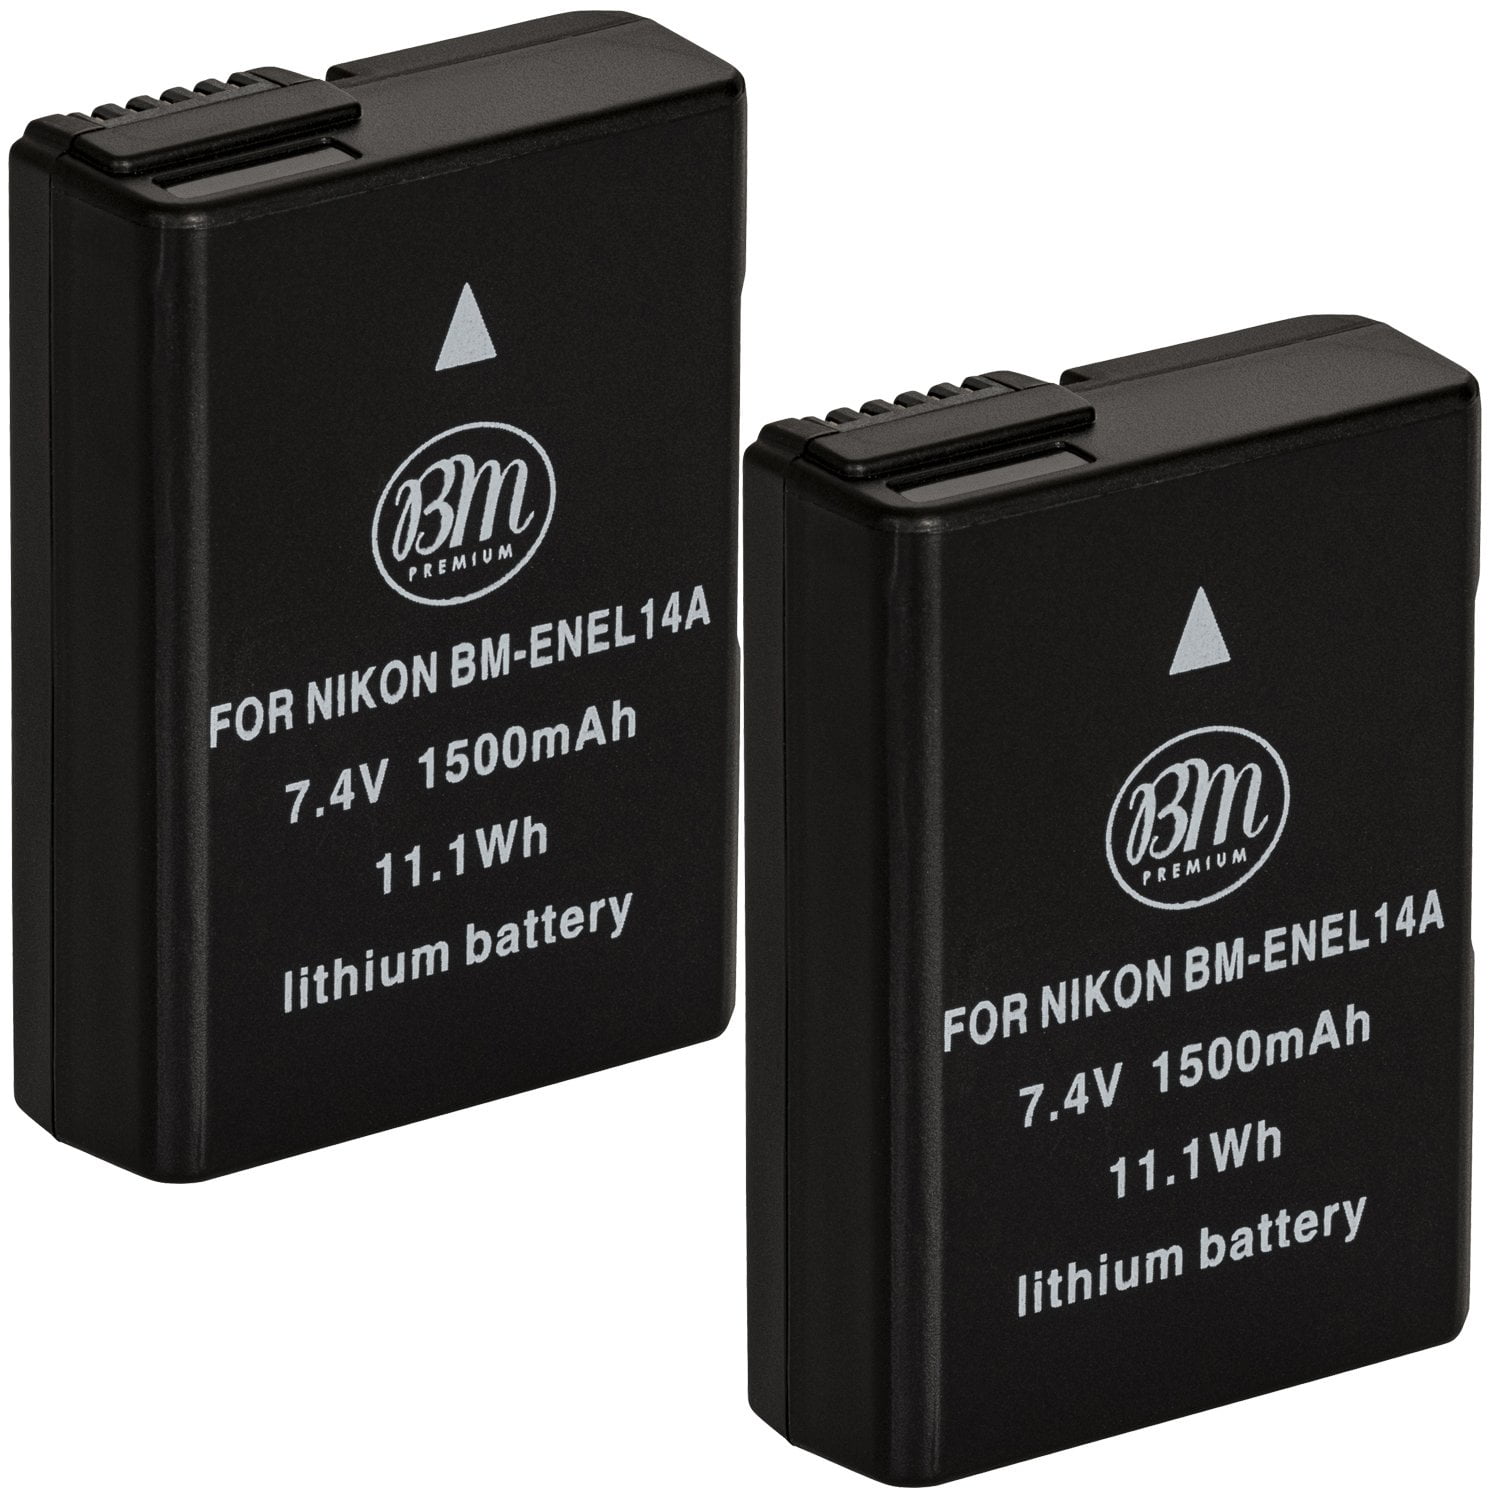 BM Premium 2 EN-EL14A Batteries for Nikon D3100, D3200 D3300 D3400